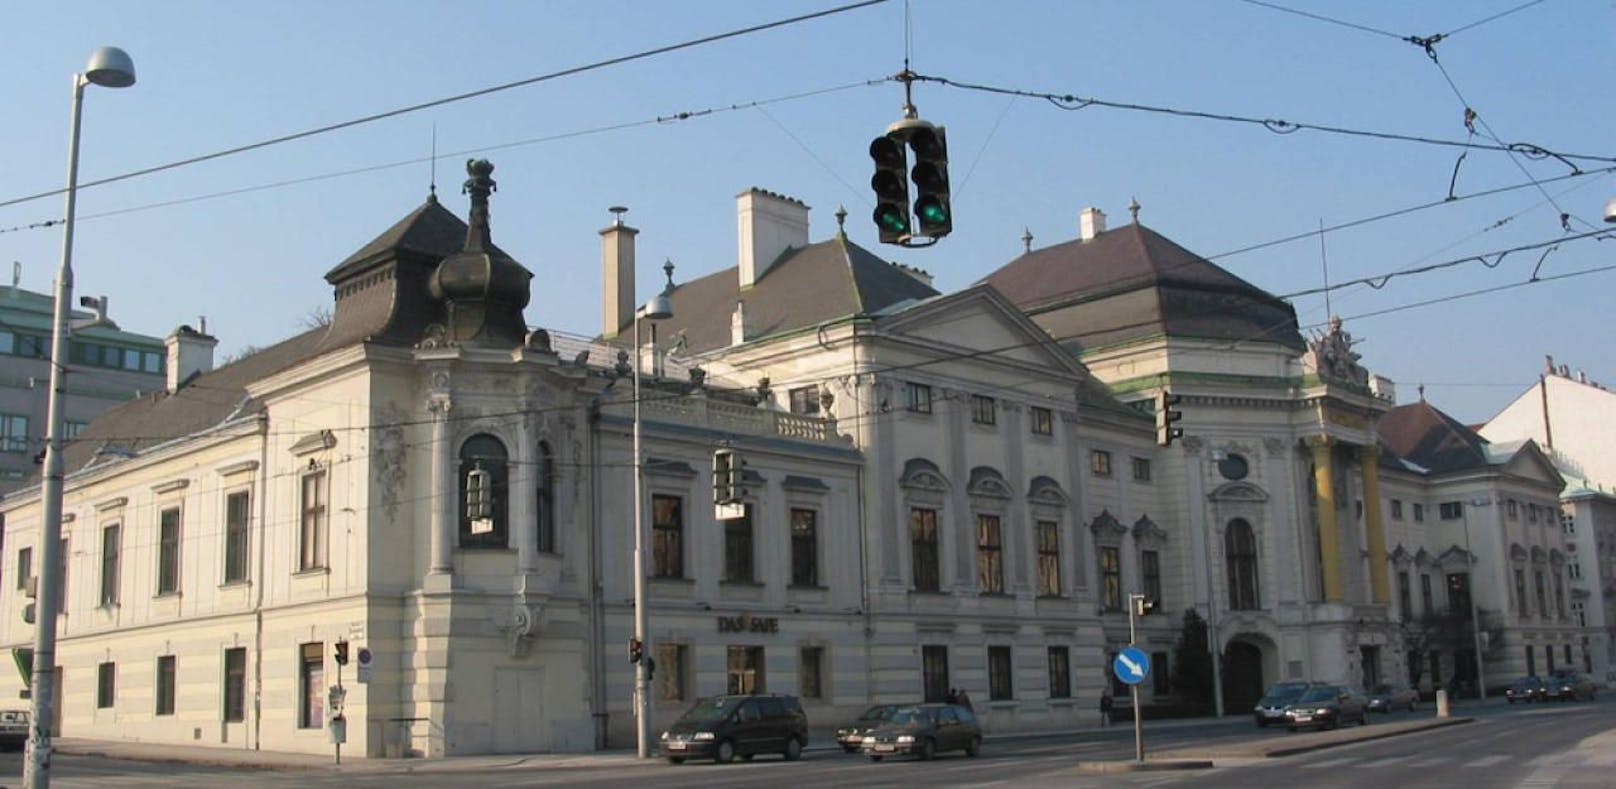 Das Palais Auersperg im 8. Wiener Gemeindebezirk Josefstadt.